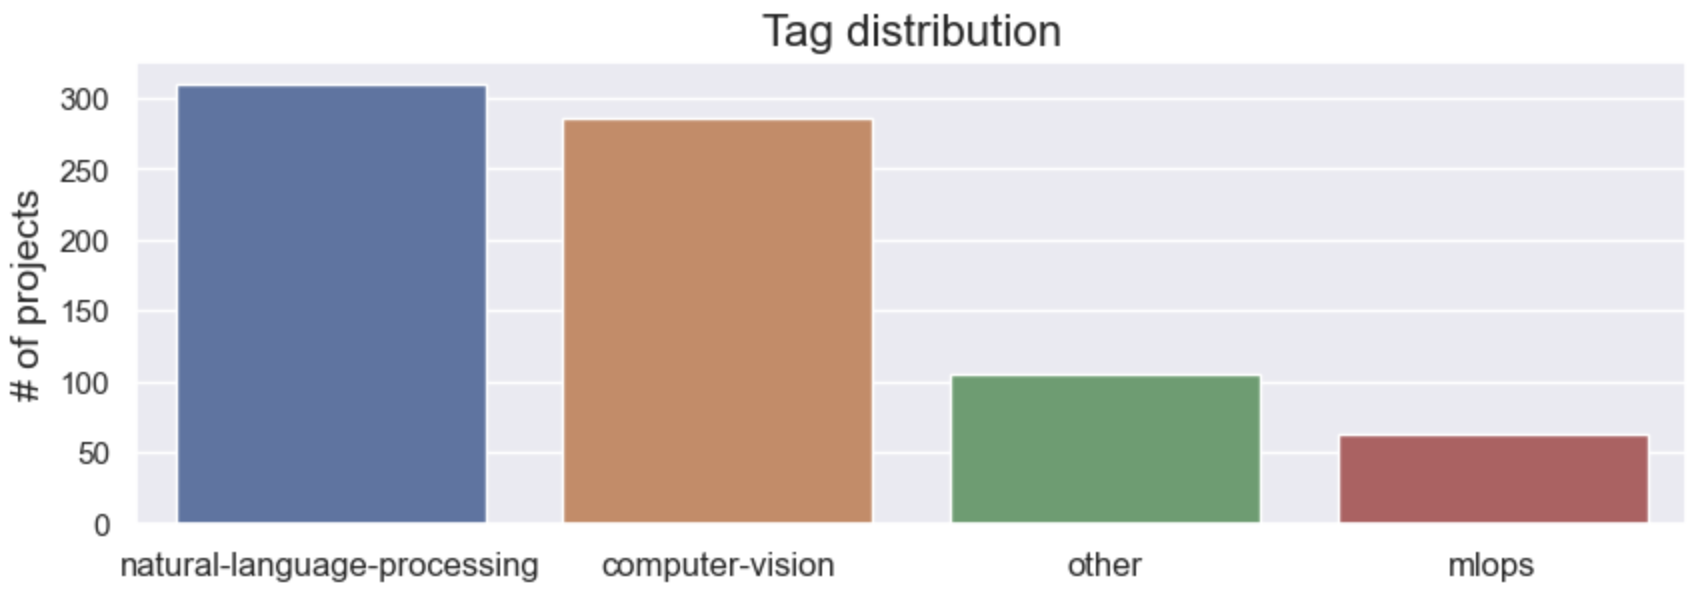 tag distribution